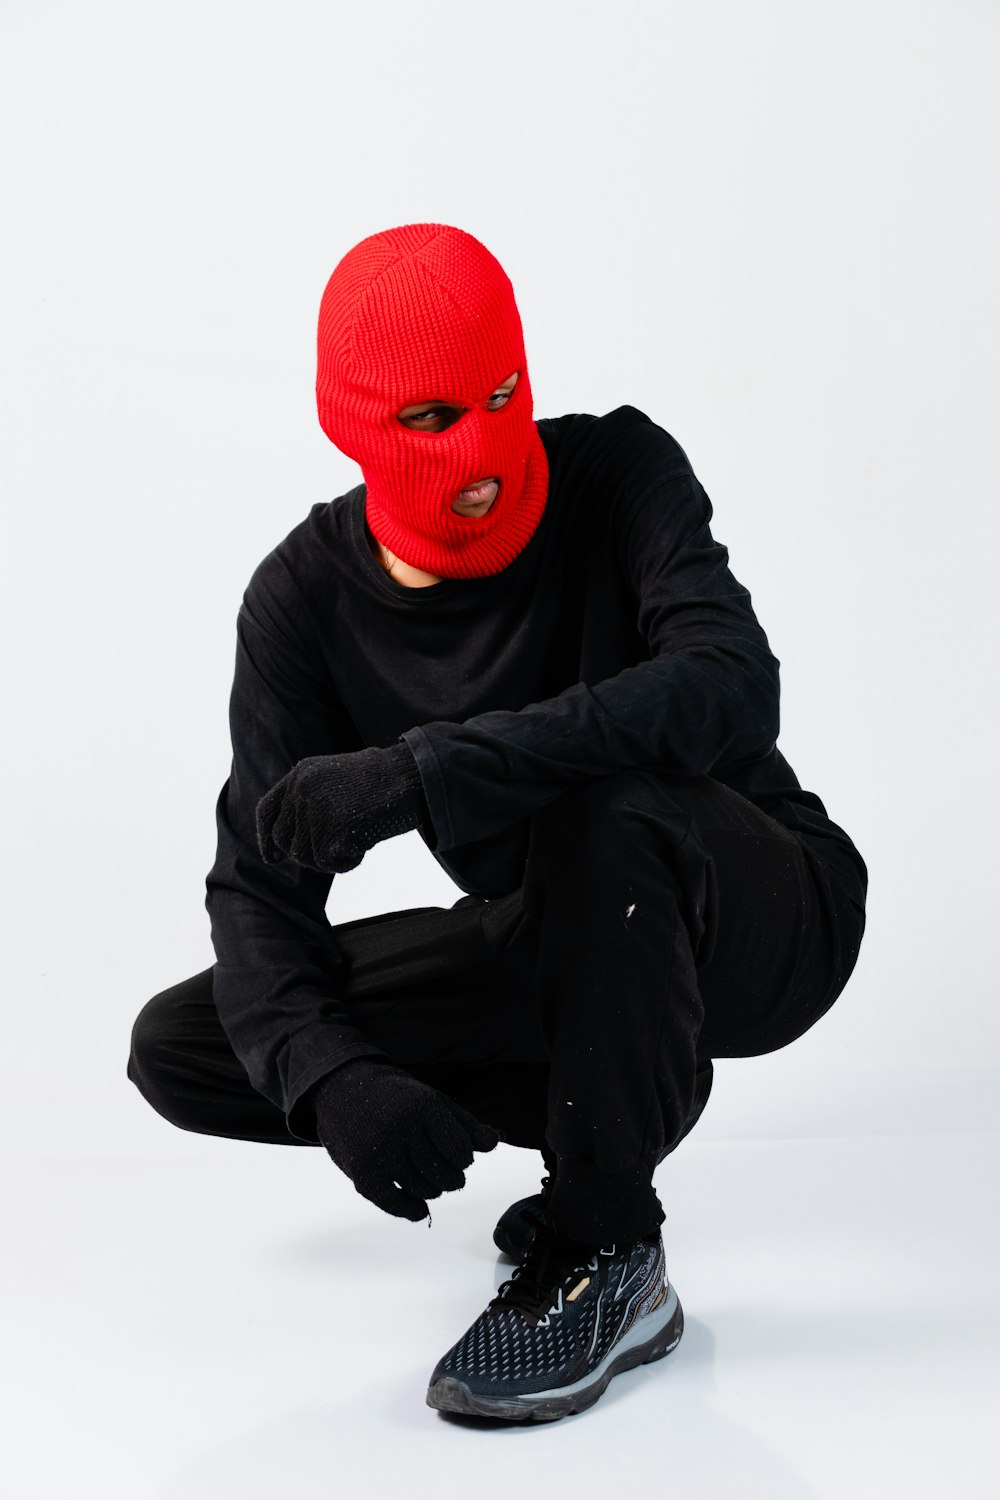 Un uomo in una maschera rossa accovacciato su uno sfondo bianco